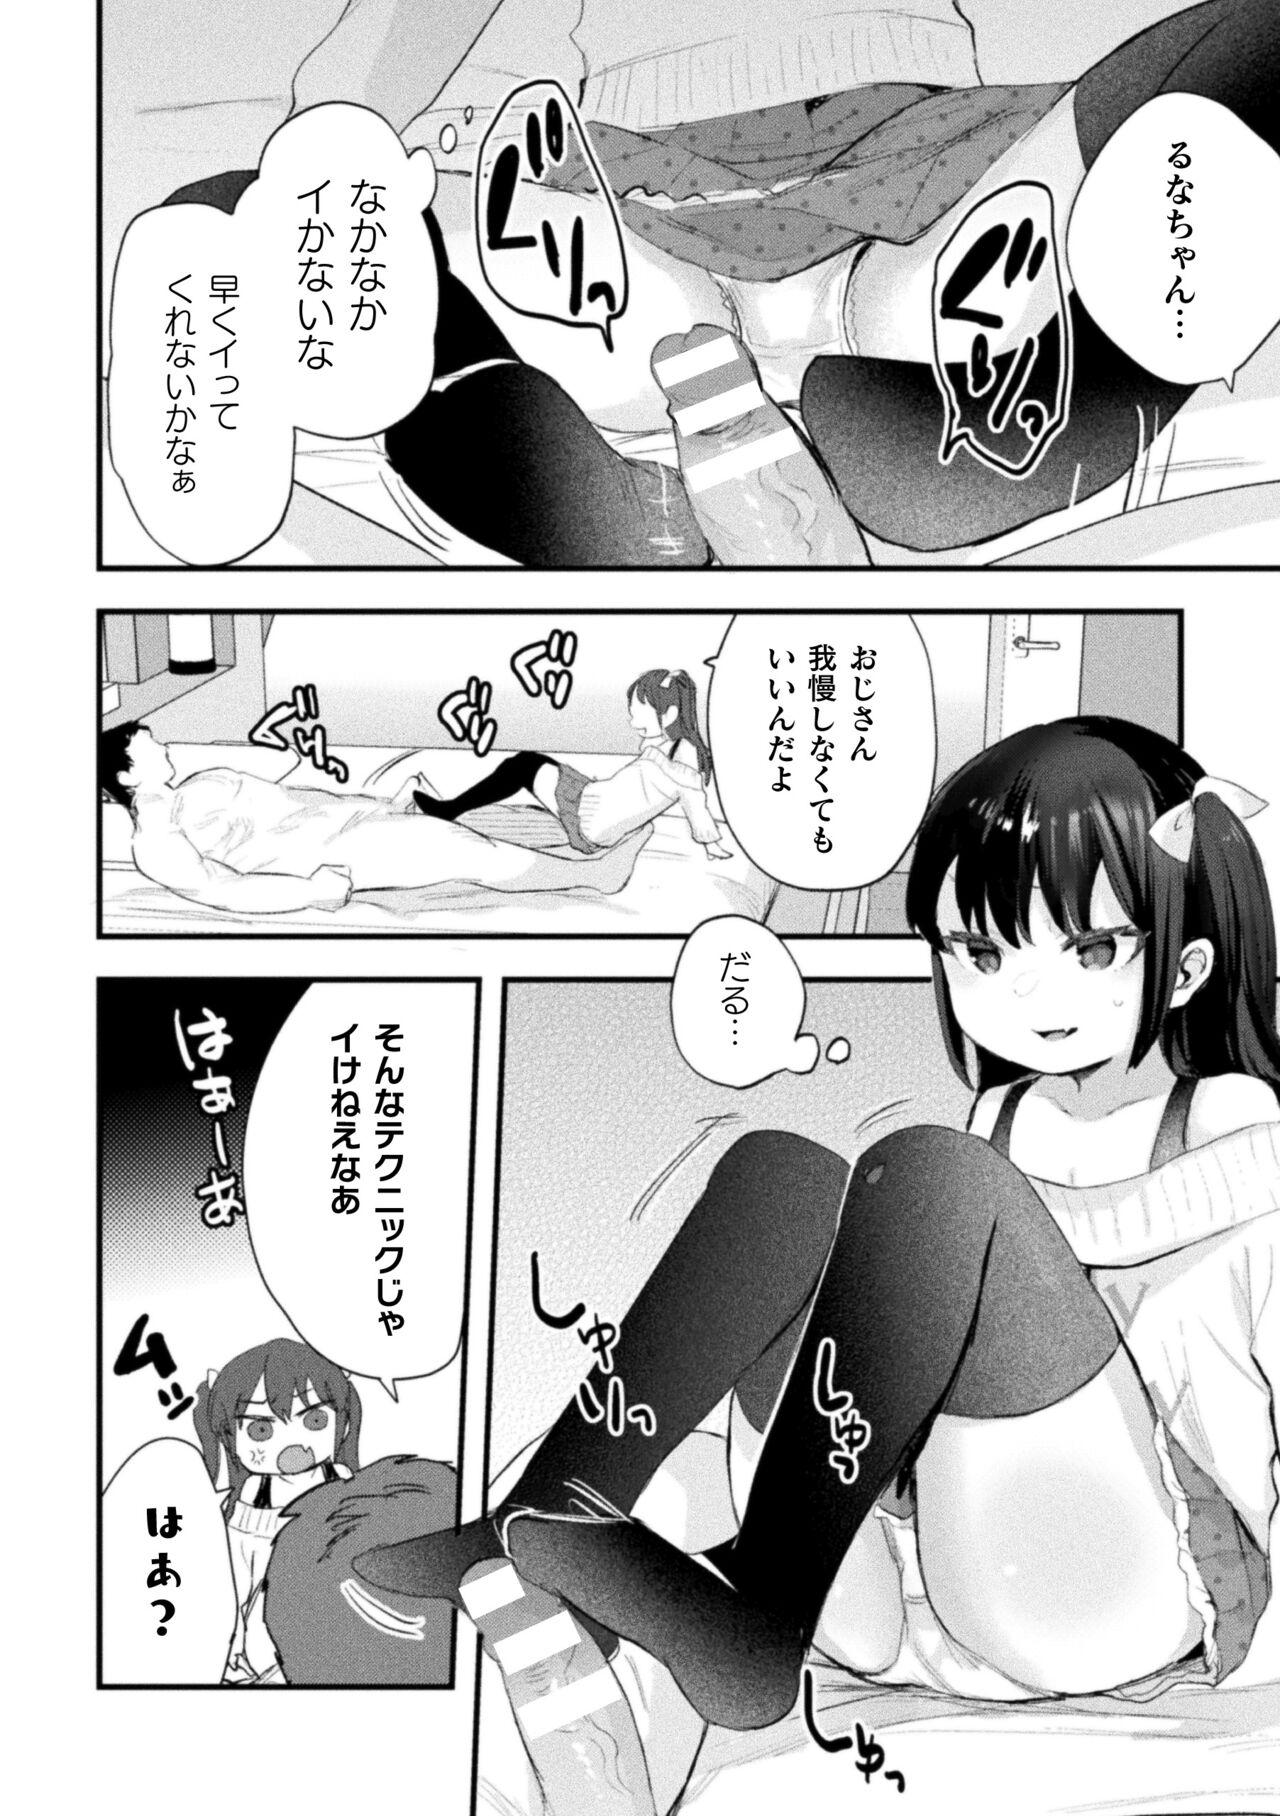 Horny Slut Nijigen komikku magajin mesugakipapa katsu seisai o teate wa niku bō ikkatsu wakara se harai Vol. 1 Cam - Page 8